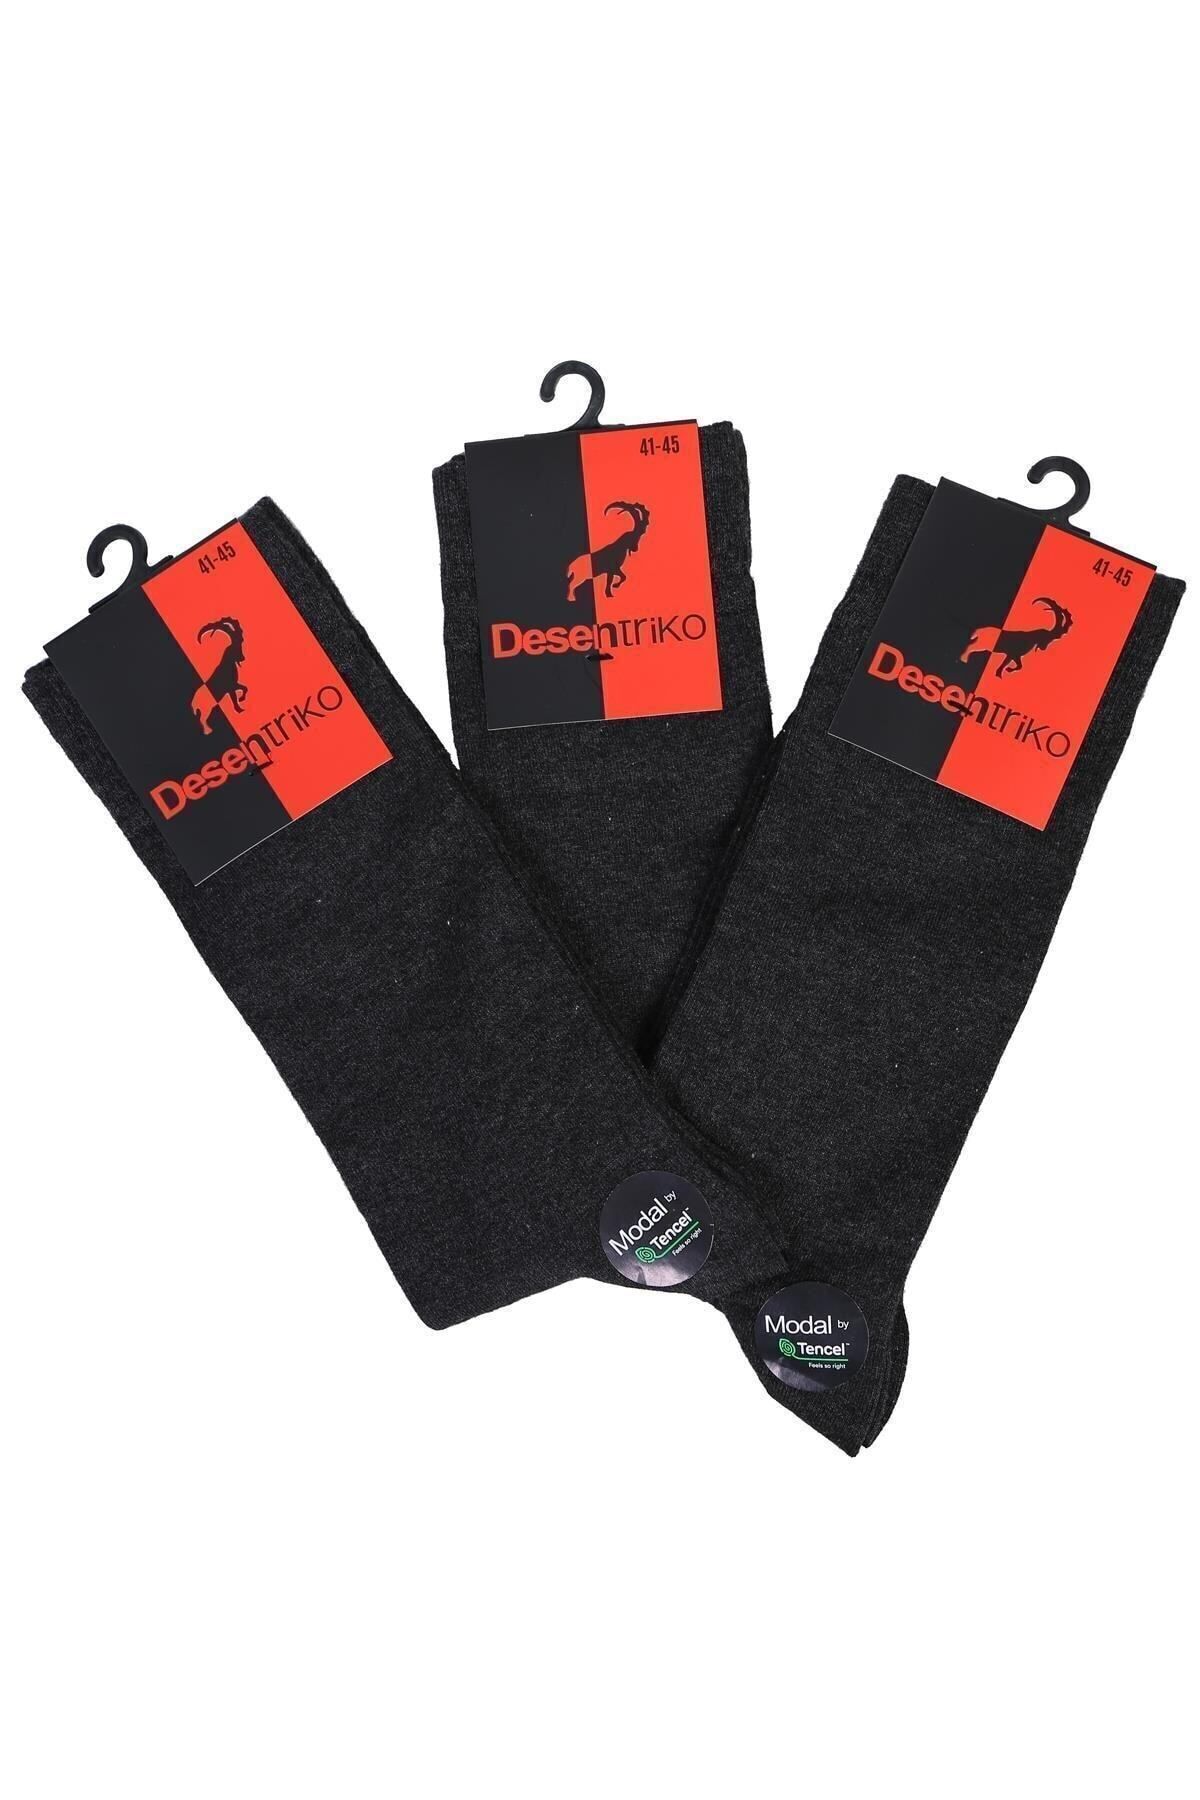 Desen Triko Erkek Düz Renk Modal 3'lü Soket Çorap Füme